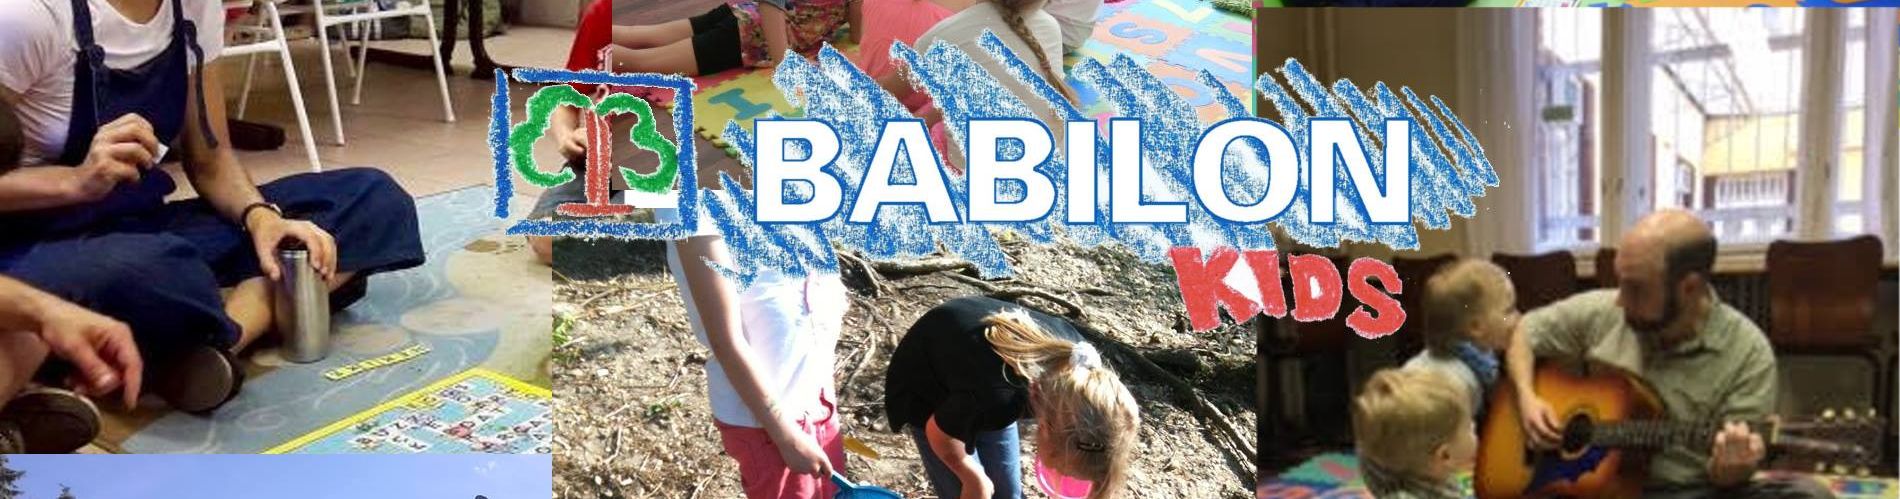 Babilon Kids slide